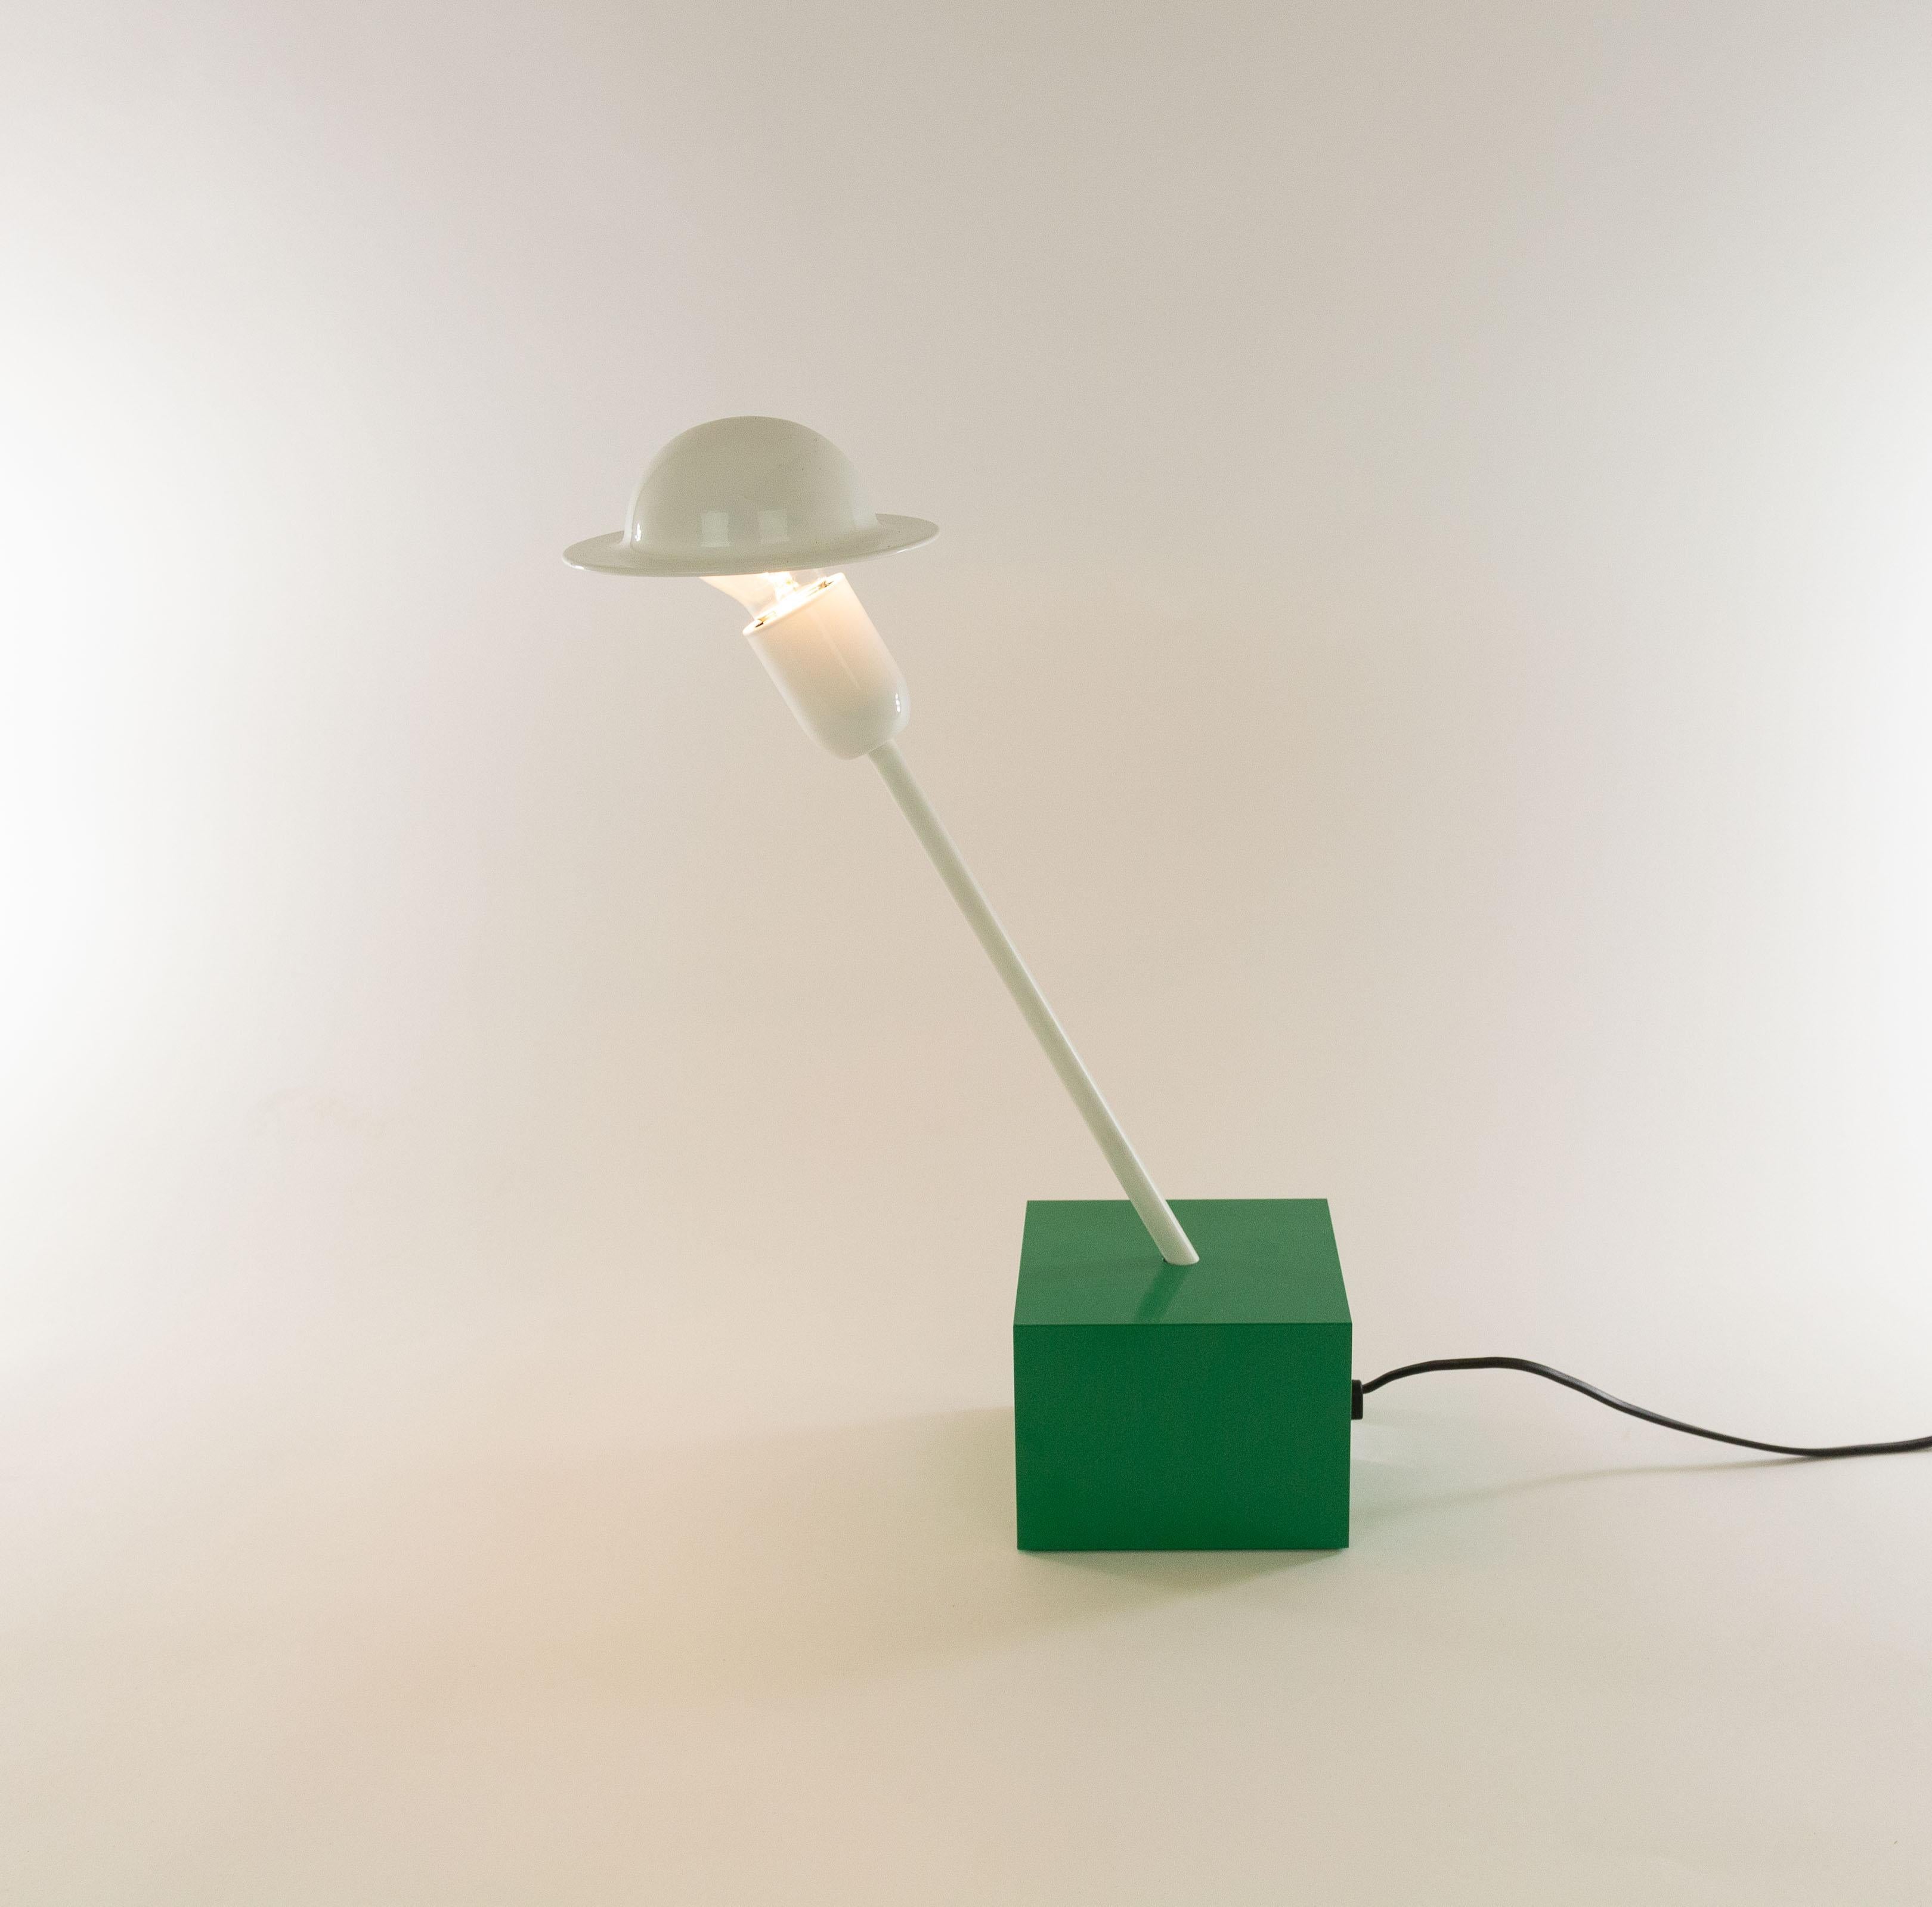 Lampe de table Don conçue en 1977 par Ettore Sottsass et fabriquée par Stilnovo.

La lampe se compose d'une base cubique vert émeraude relativement lourde, d'une tige inclinée blanche et d'un abat-jour blanc réglable saisissant. Cet abat-jour est